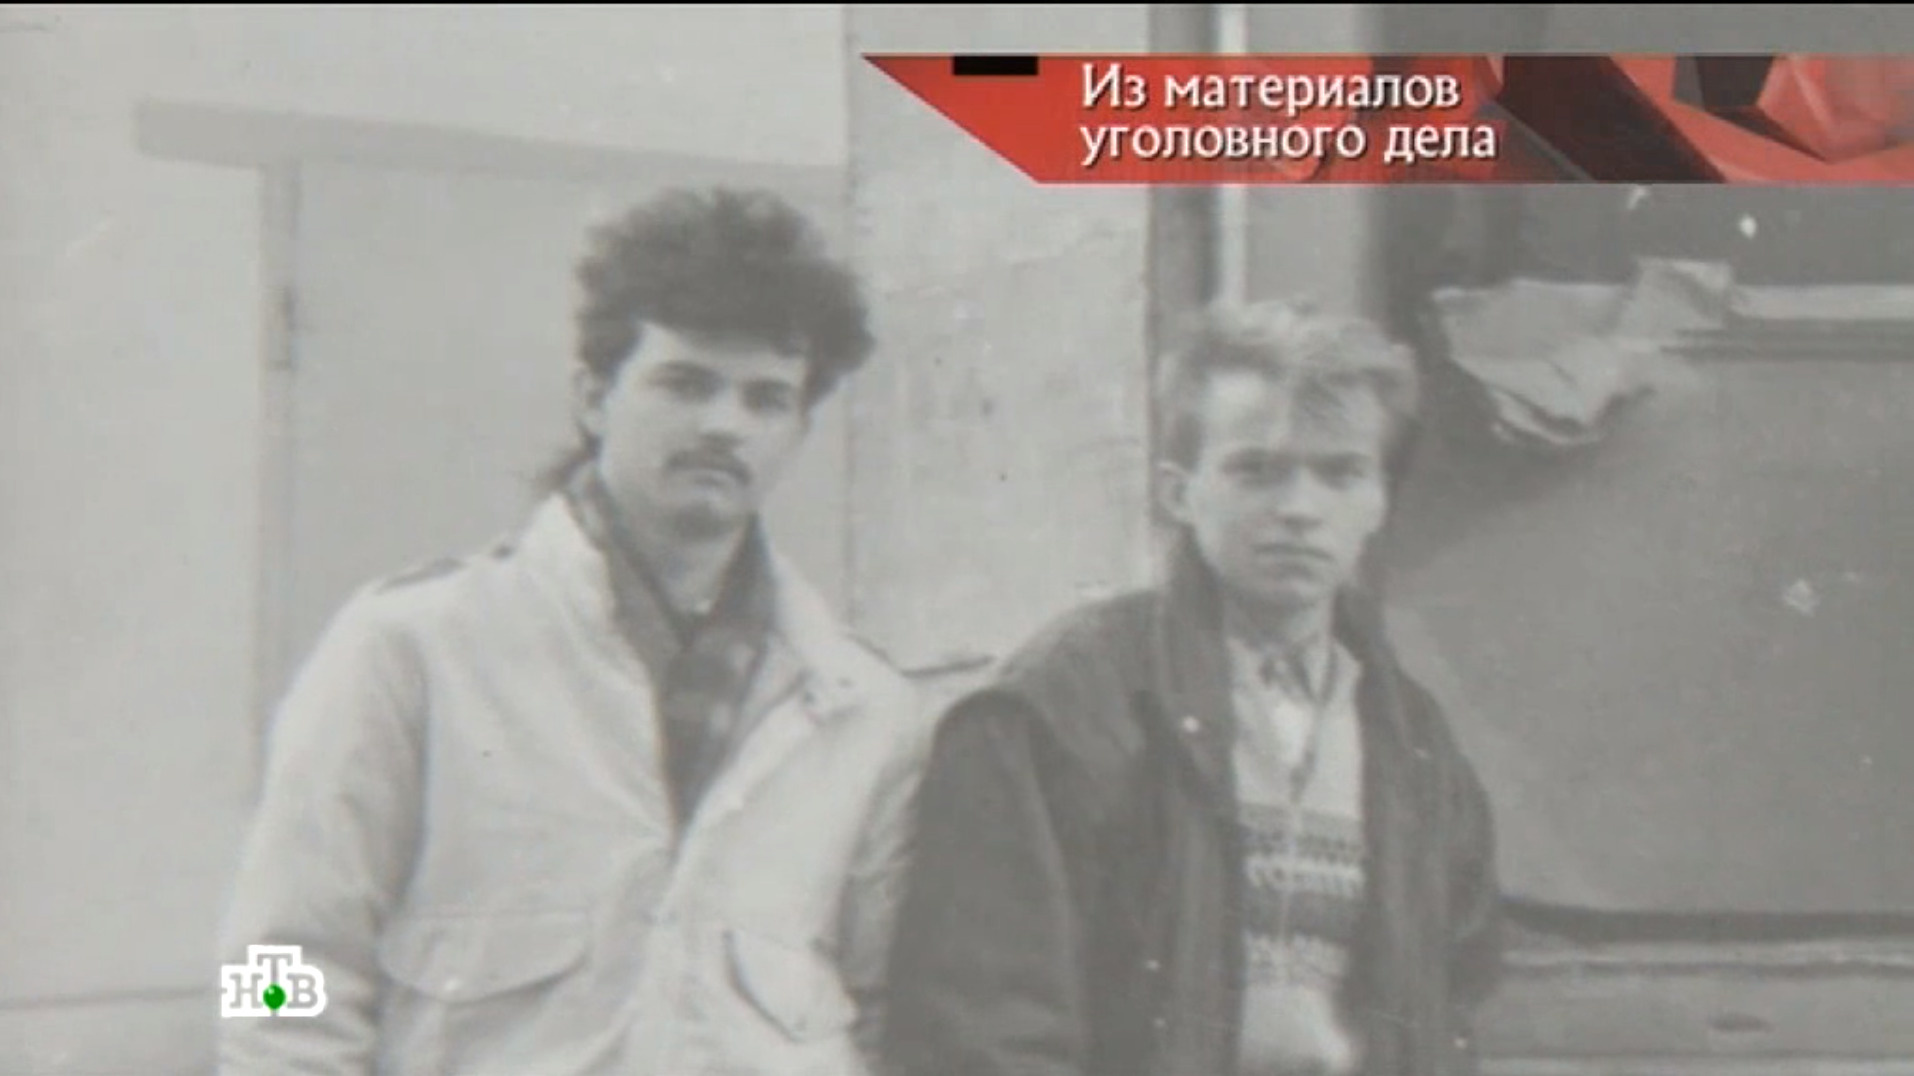 Задержанные грузчики, перевозившие вещи из квартиры Щербаковых